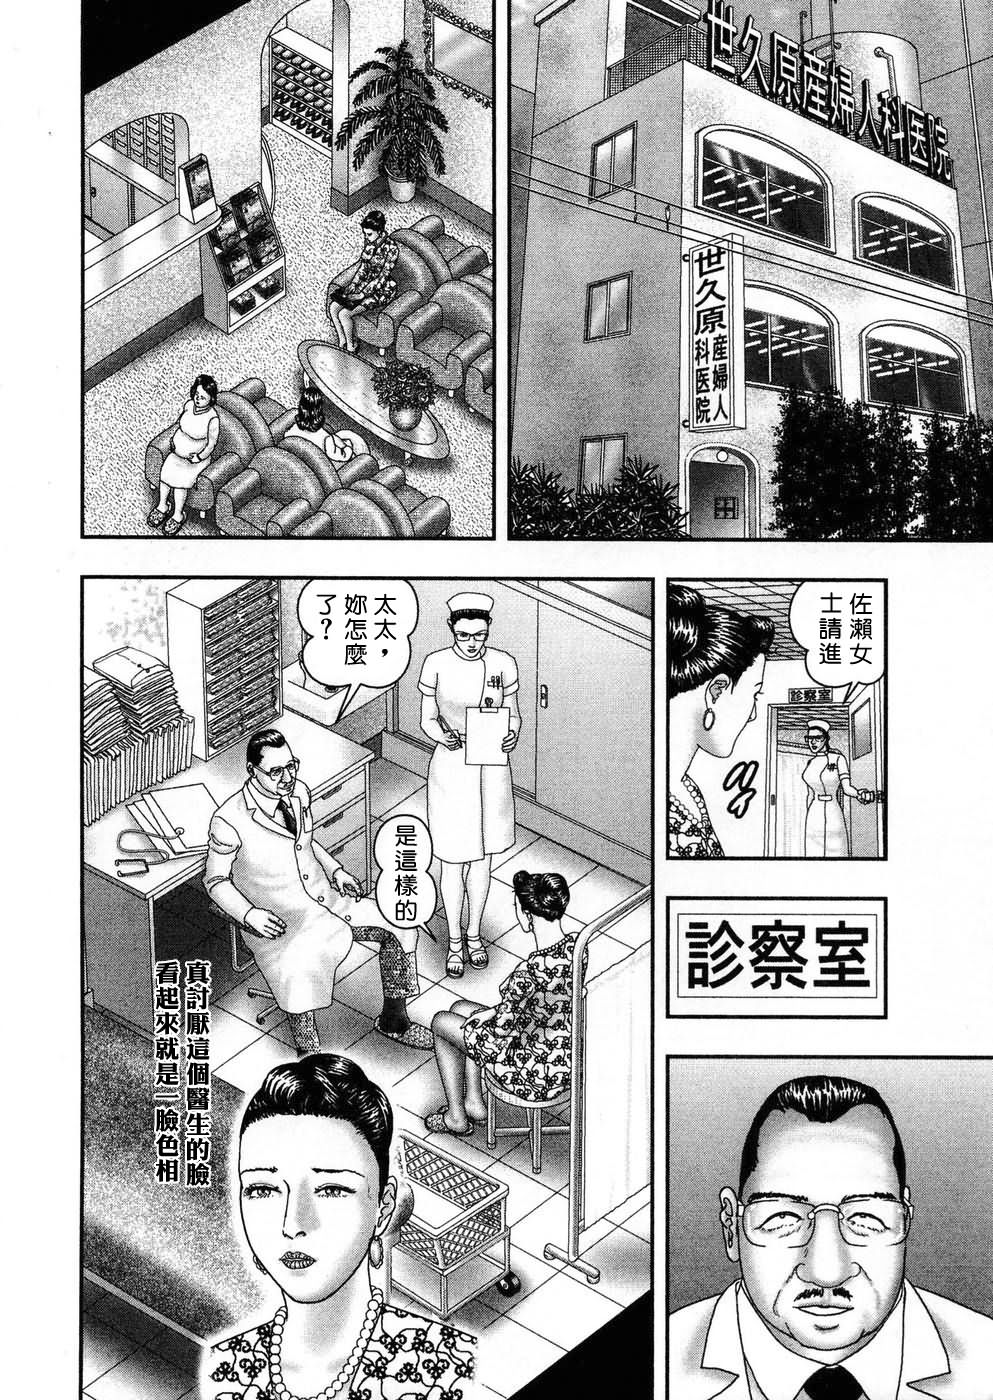 [Tankei Horie] Jukujo Game 05 [CHINESE] (成年コミック) [堀江耽閨] 熟女ゲーム 5 [中文]